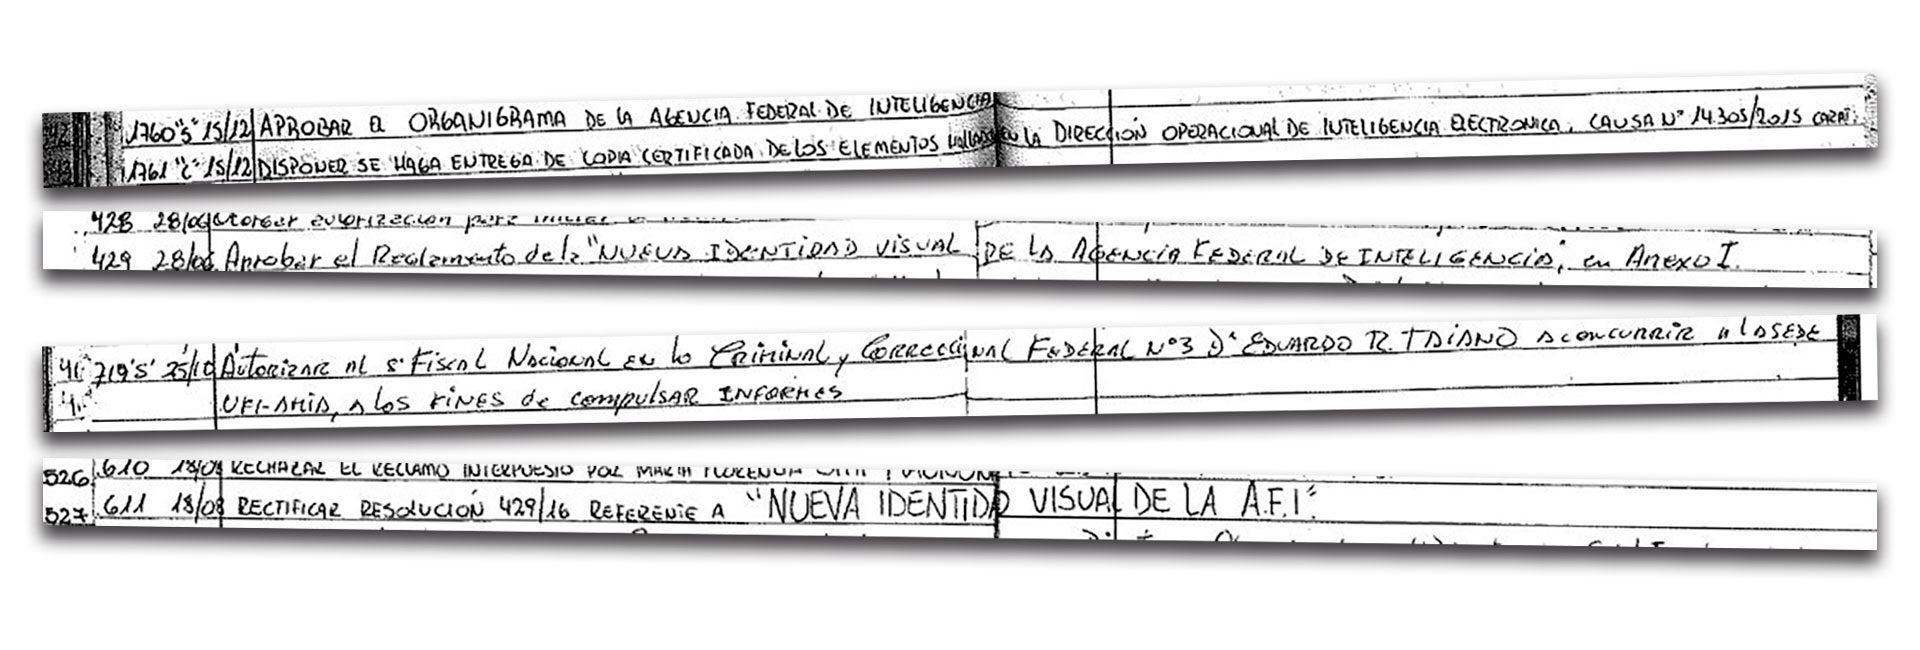 Varias resoluciones asentadas en el libro que llegó a Lomas de Zamora